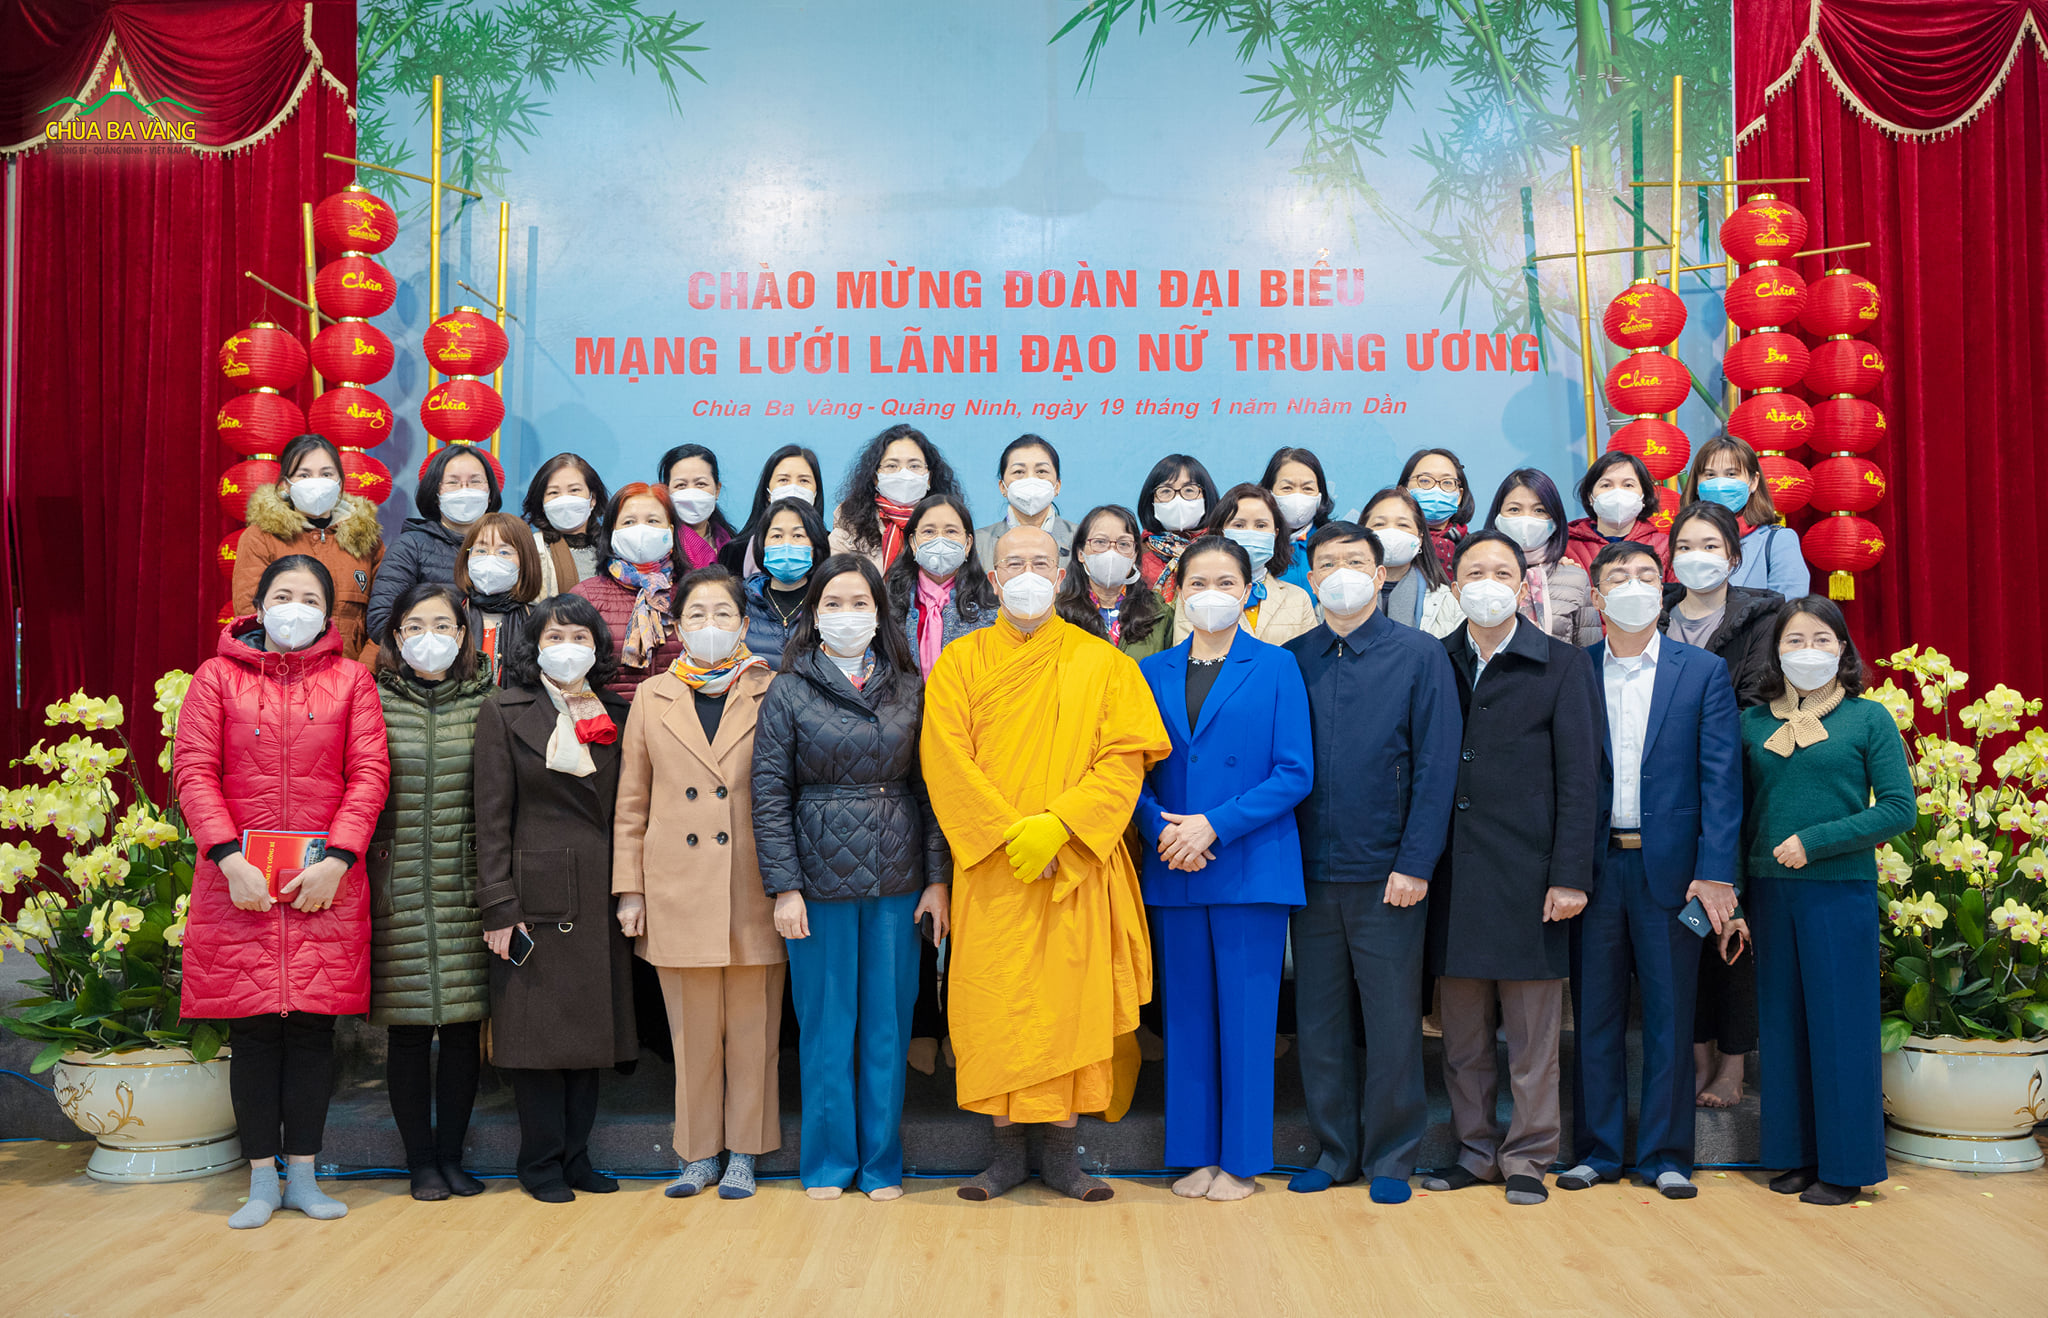 Sư Phụ Thích Trúc Thái Minh chụp ảnh lưu niệm cùng đoàn đại biểu Mạng lưới Lãnh đạo nữ Trung ương đến thăm chùa Ba Vàng